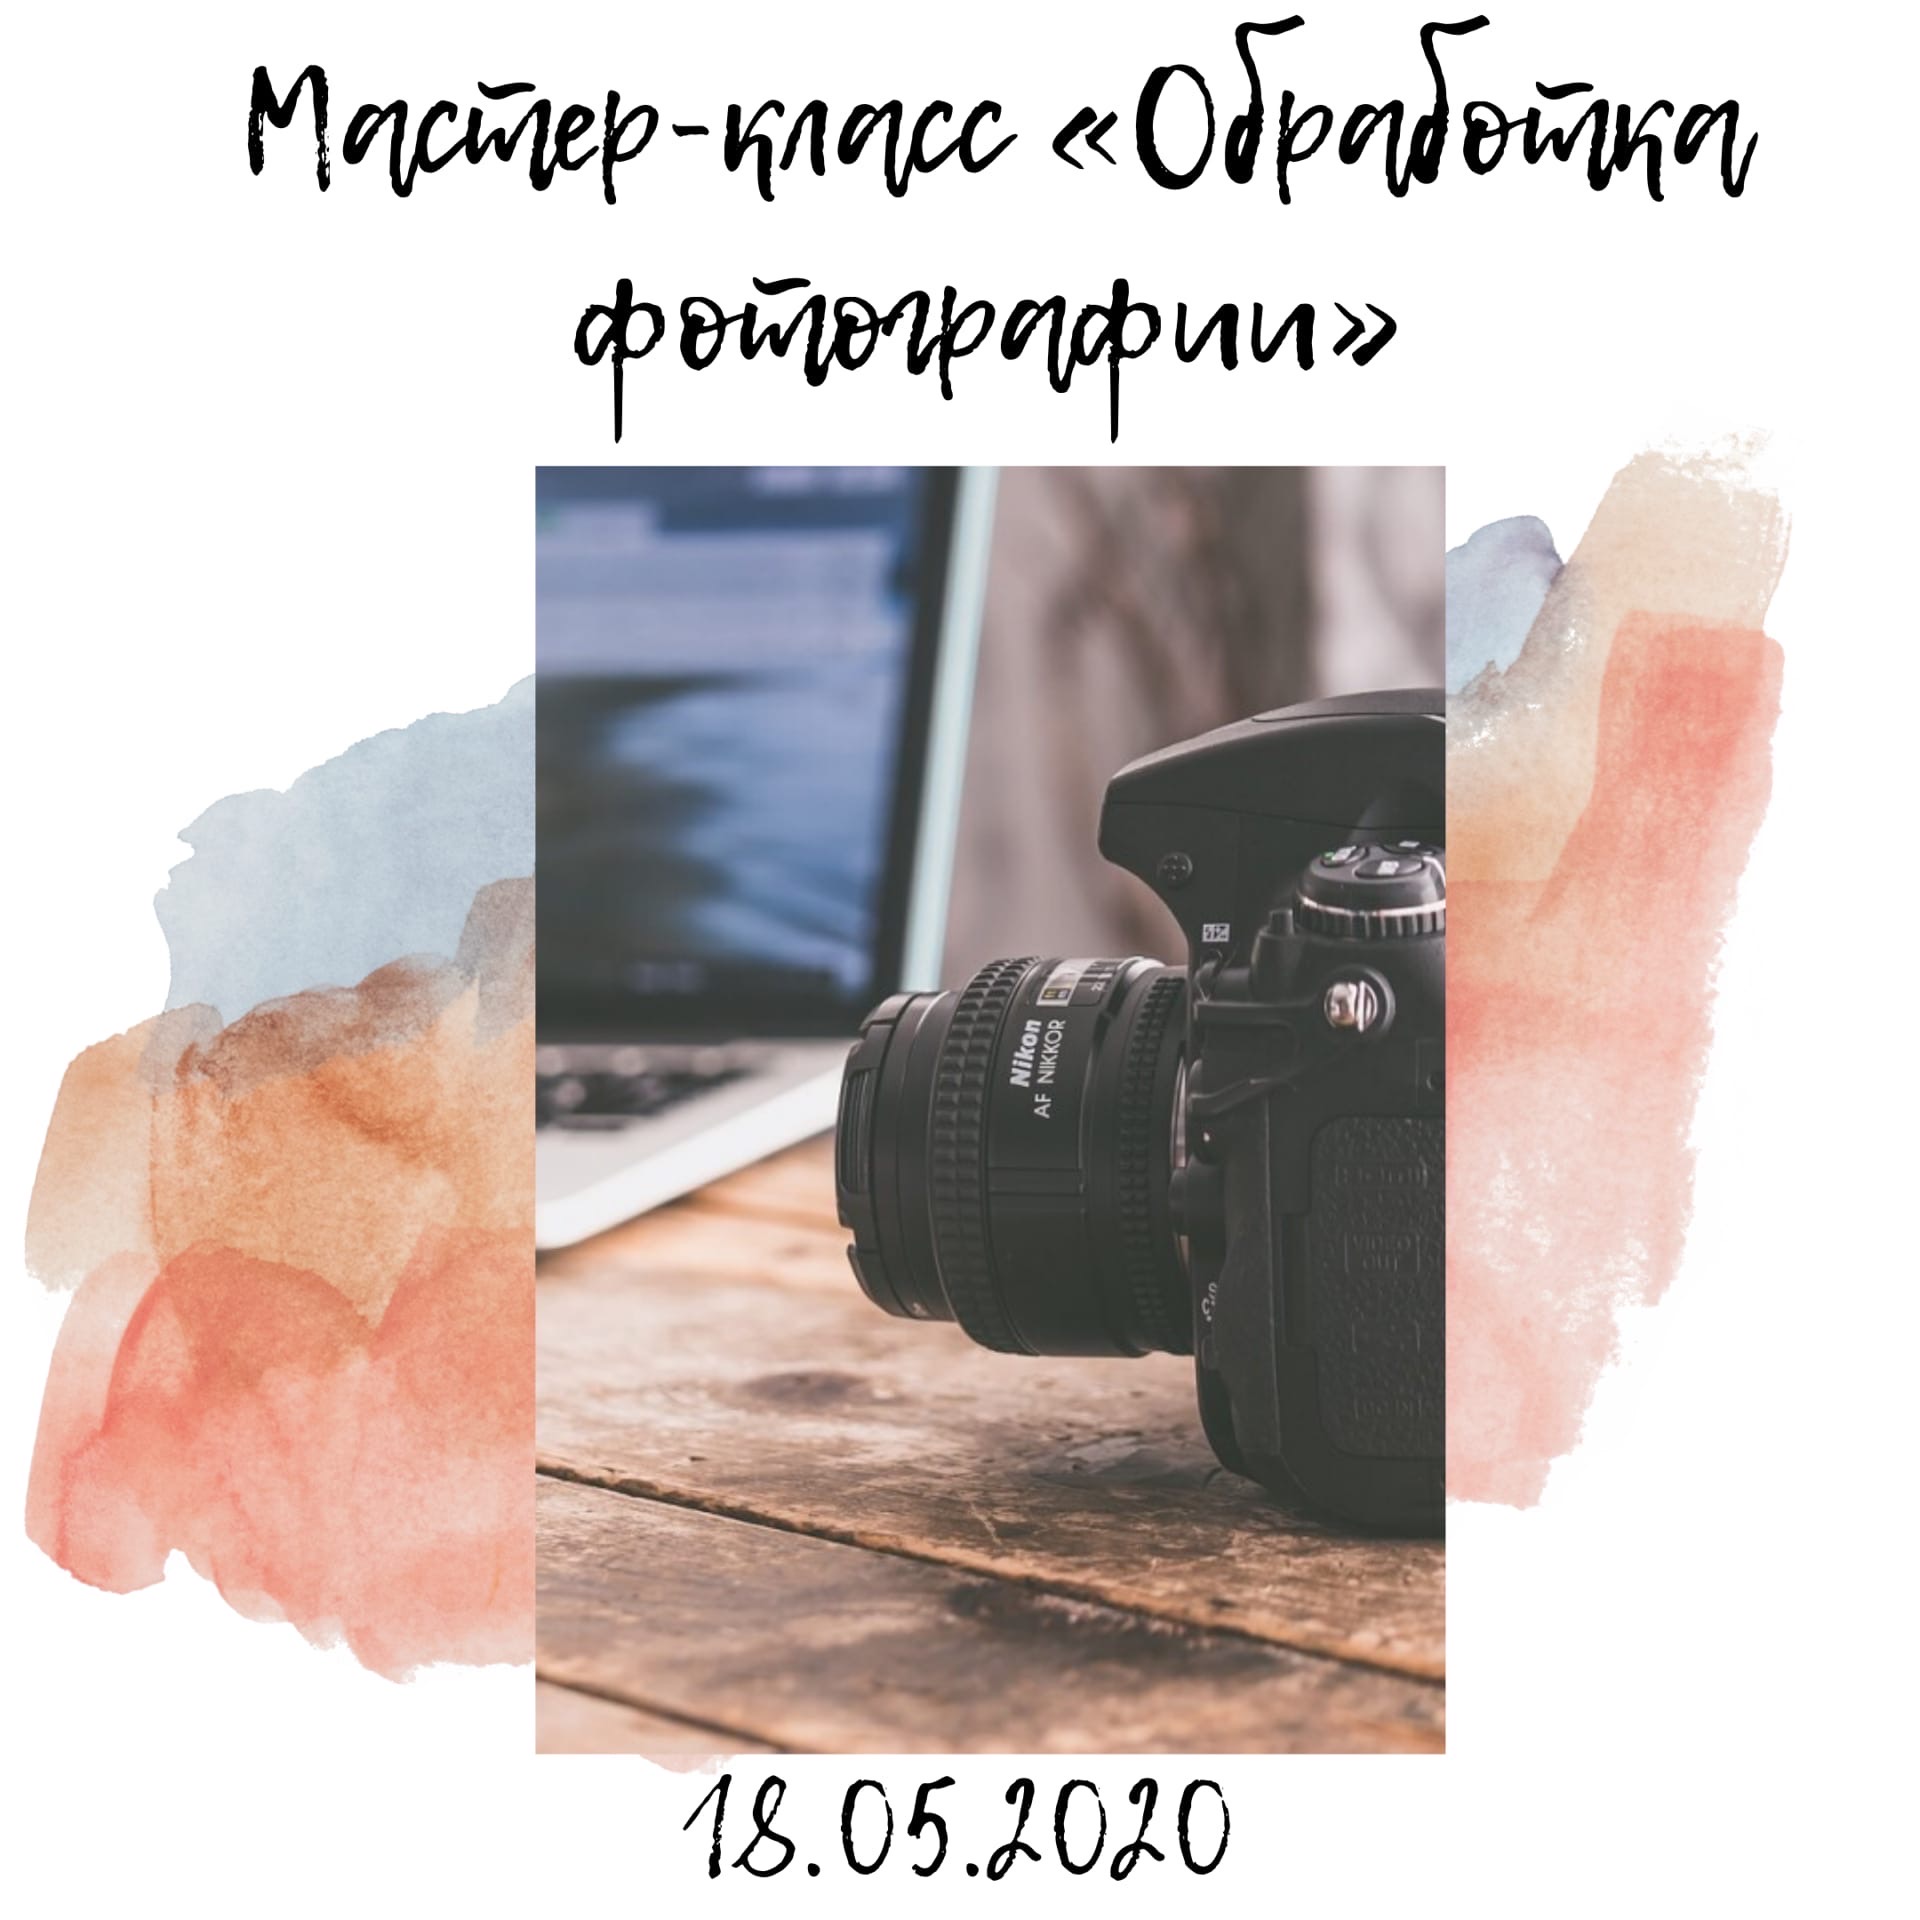 Приглашаем всех желающих на открытый мастер-класс «Обработка фотографии»